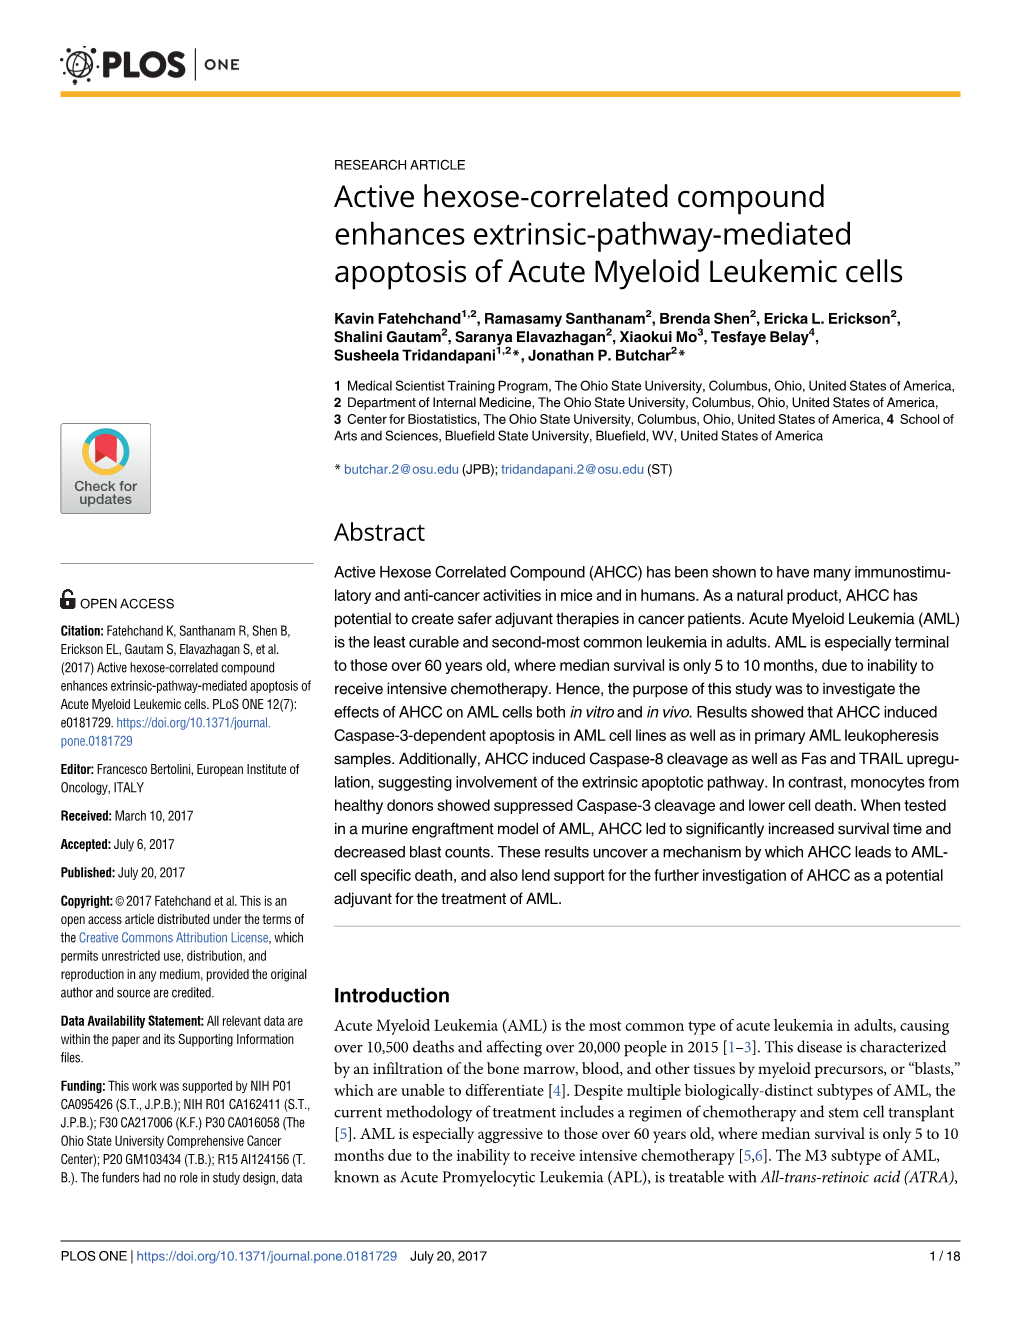 Active Hexose-Correlated Compound Enhances Extrinsic-Pathway-Mediated Apoptosis of Acute Myeloid Leukemic Cells